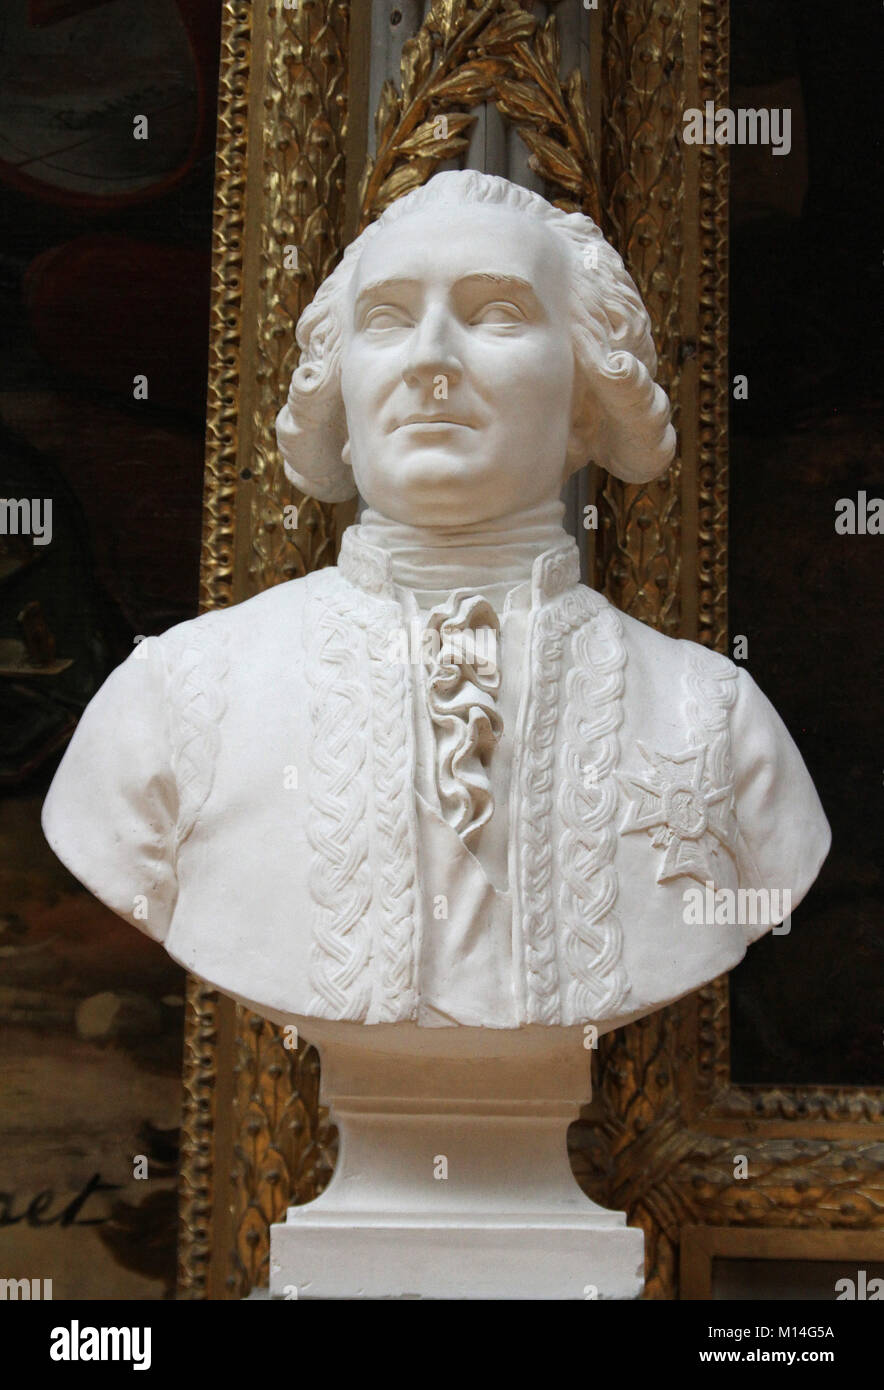 Marble bust of Lieutenant General Louis Joseph de Montcalm-Gozon, Marquis de Saint-Veran (called Montcalm) by Francisque Joseph Duret in the Gallery o Stock Photo